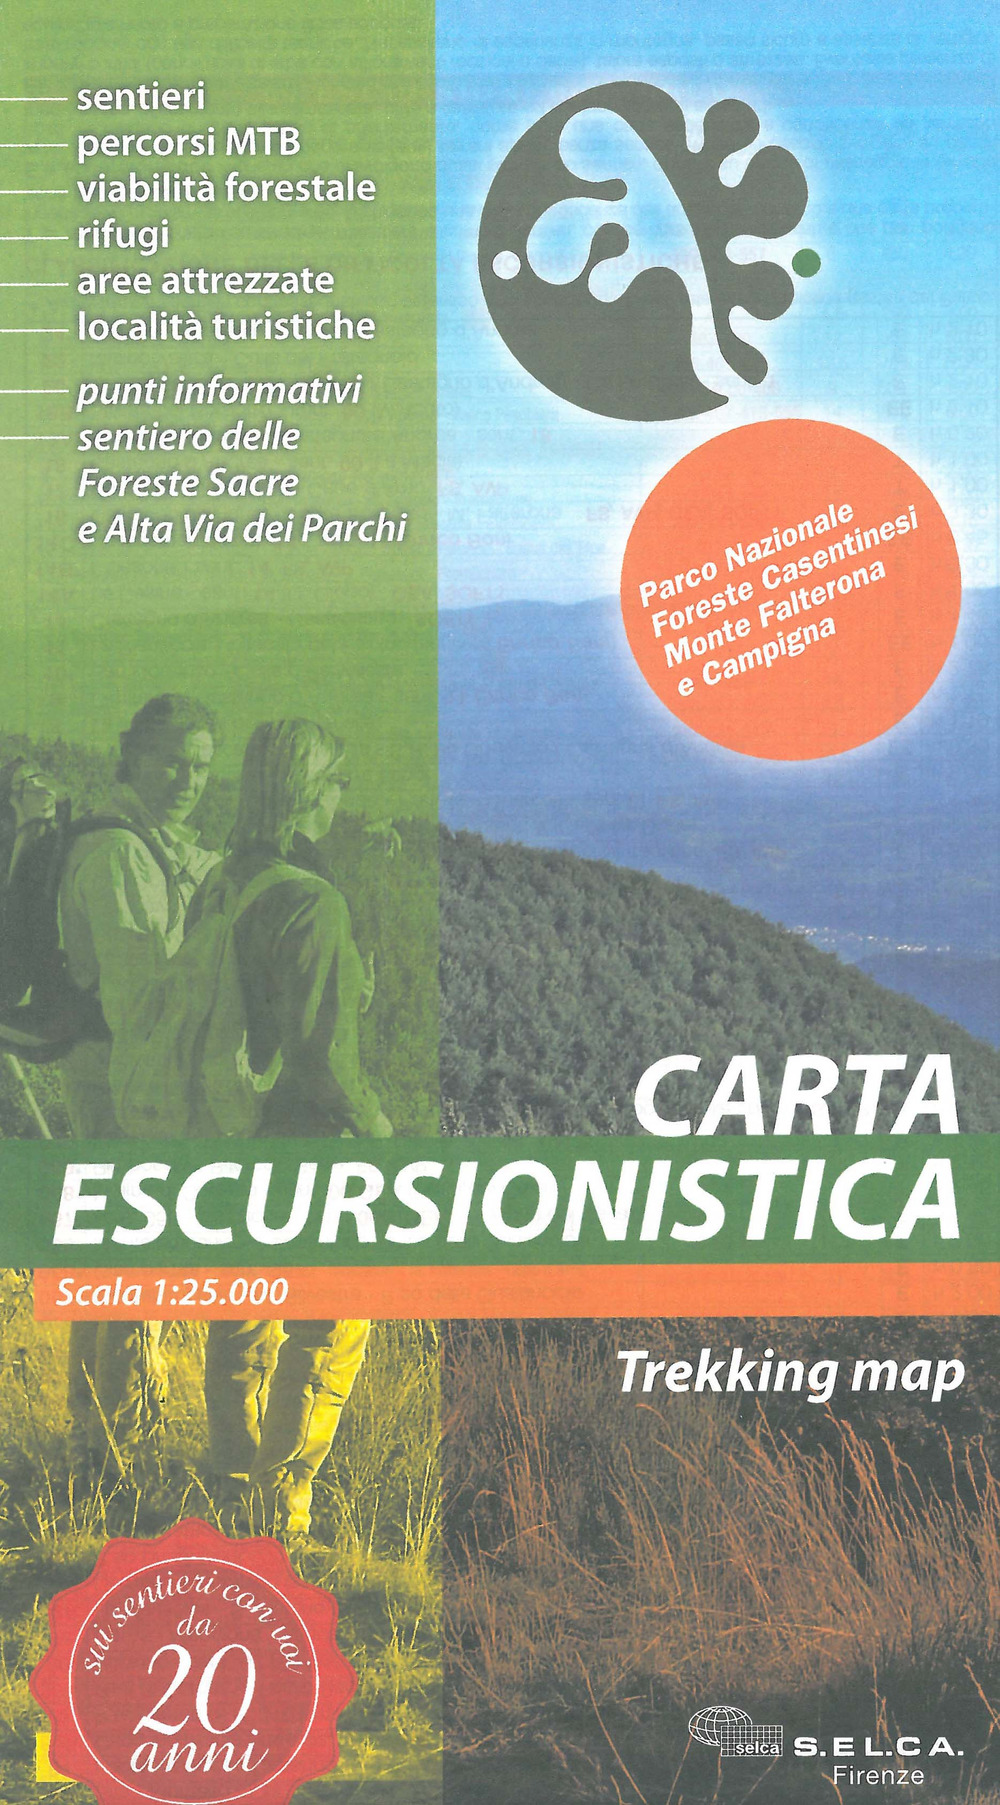 Parco nazionale foreste casentinesi, monte Falterona e Campigna. Carta escursionistica 1:25.000